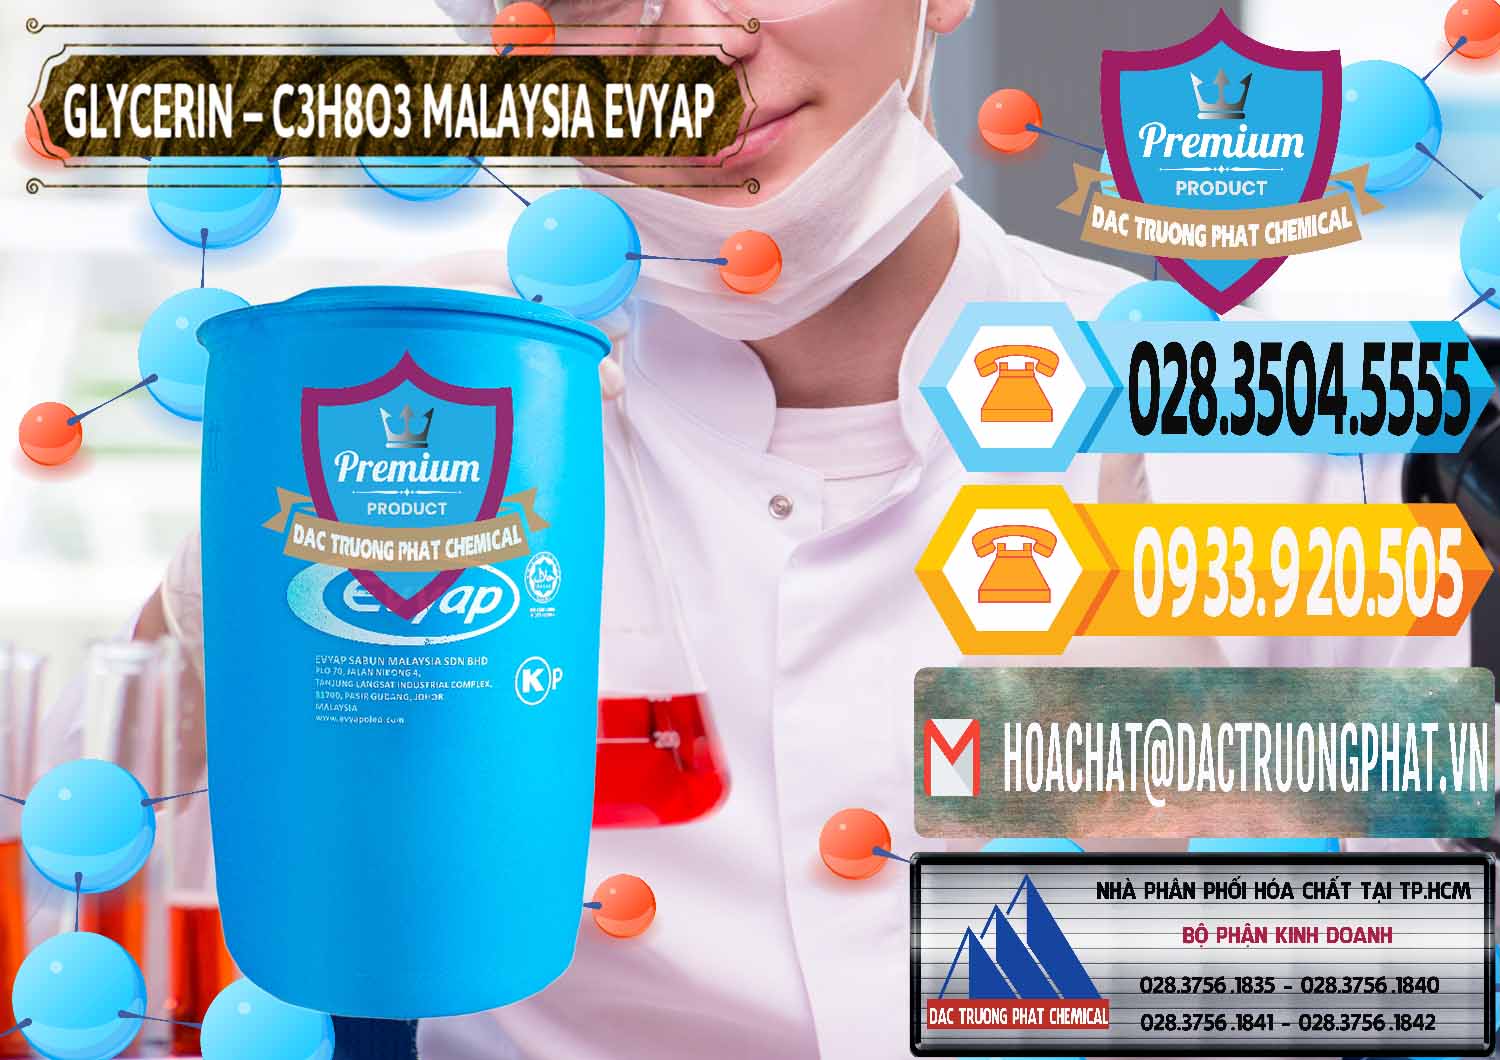 Công ty chuyên cung cấp ( bán ) Glycerin – C3H8O3 Malaysia Evyap - 0066 - Cty chuyên phân phối và kinh doanh hóa chất tại TP.HCM - hoachattayrua.net